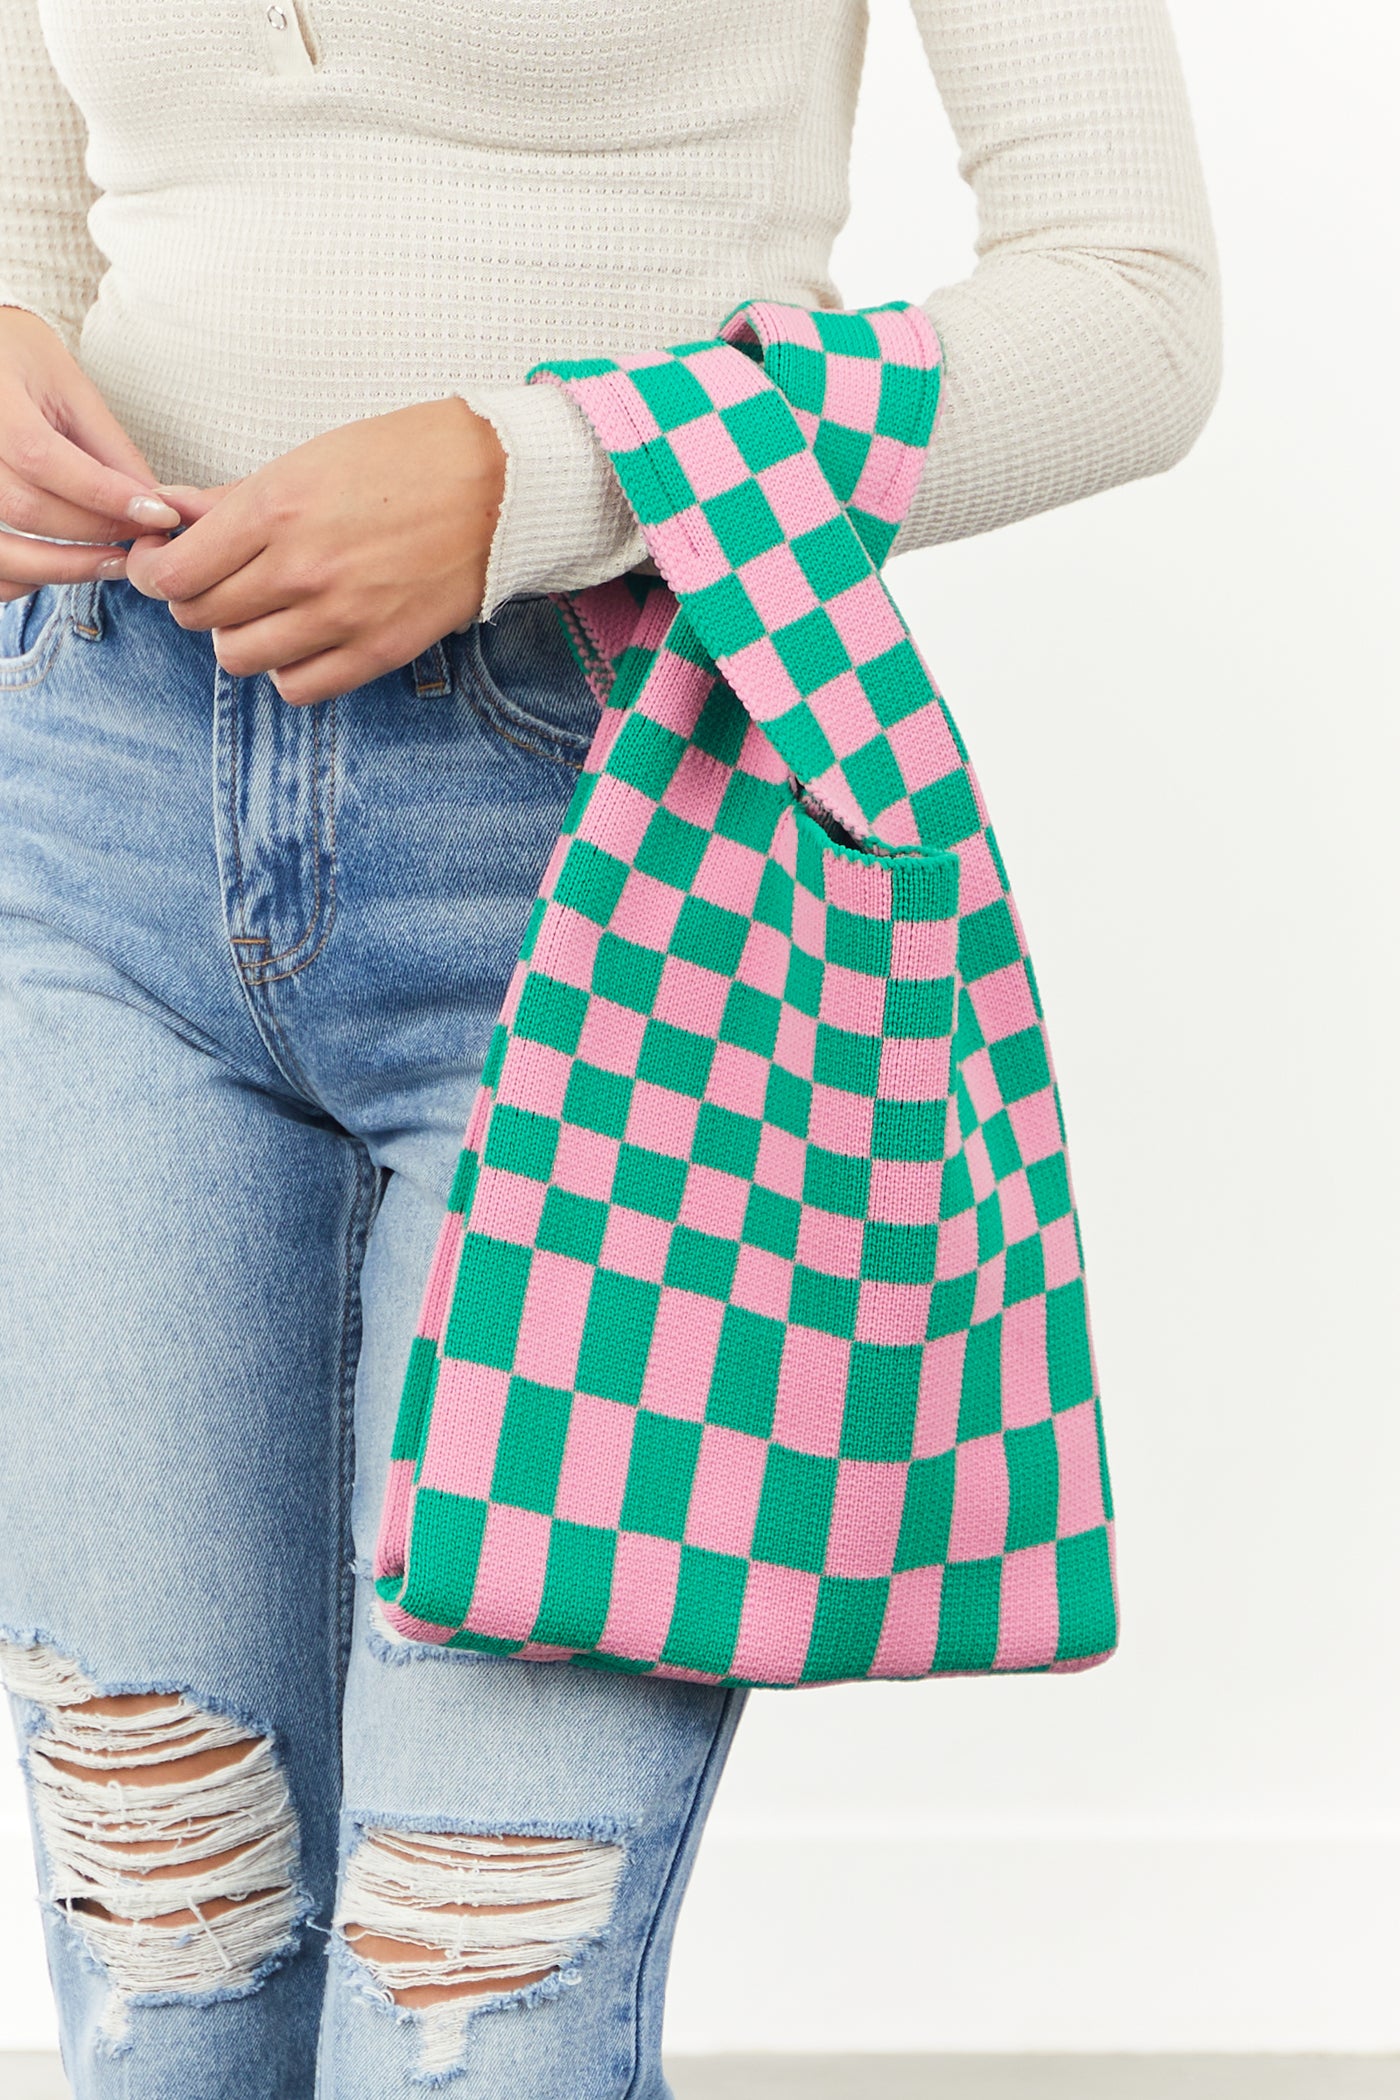 Baby Pink and Jade Checkered Knit Handbag